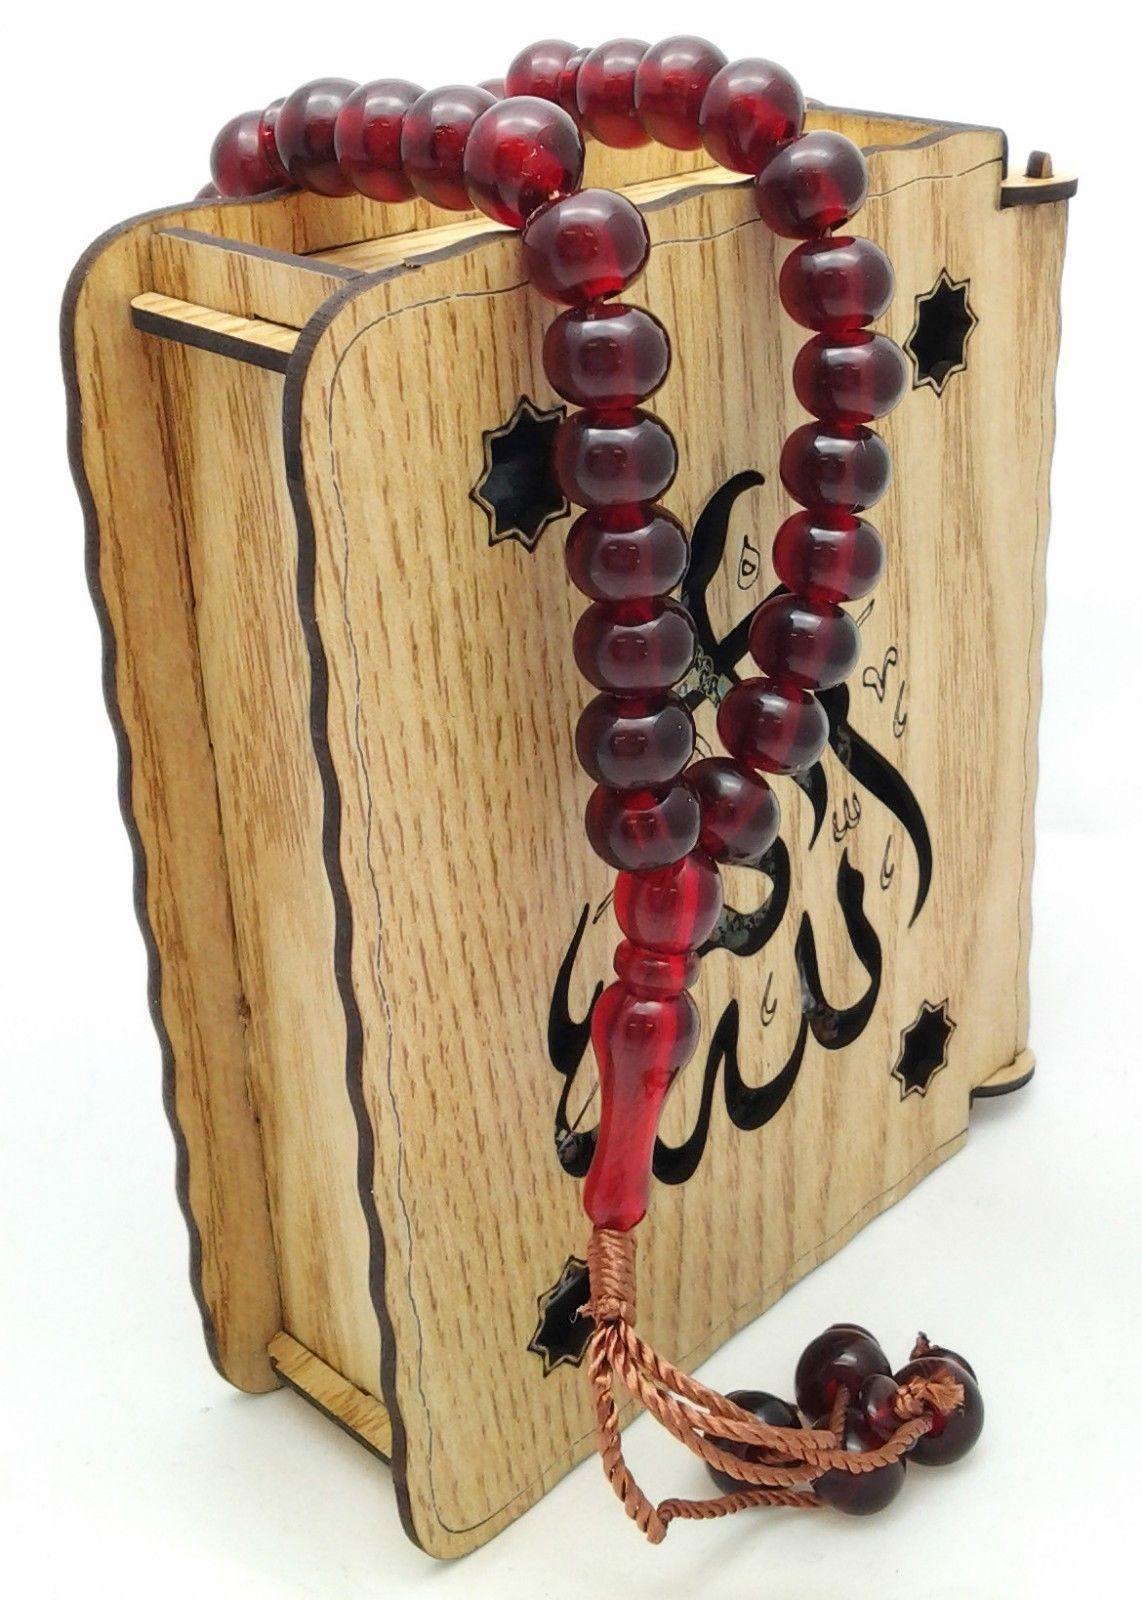 Acrylic TESBİH Islamic Prayer Beads tasbih MASBAHA Misbaha Tasbeeh - Islamic Shop